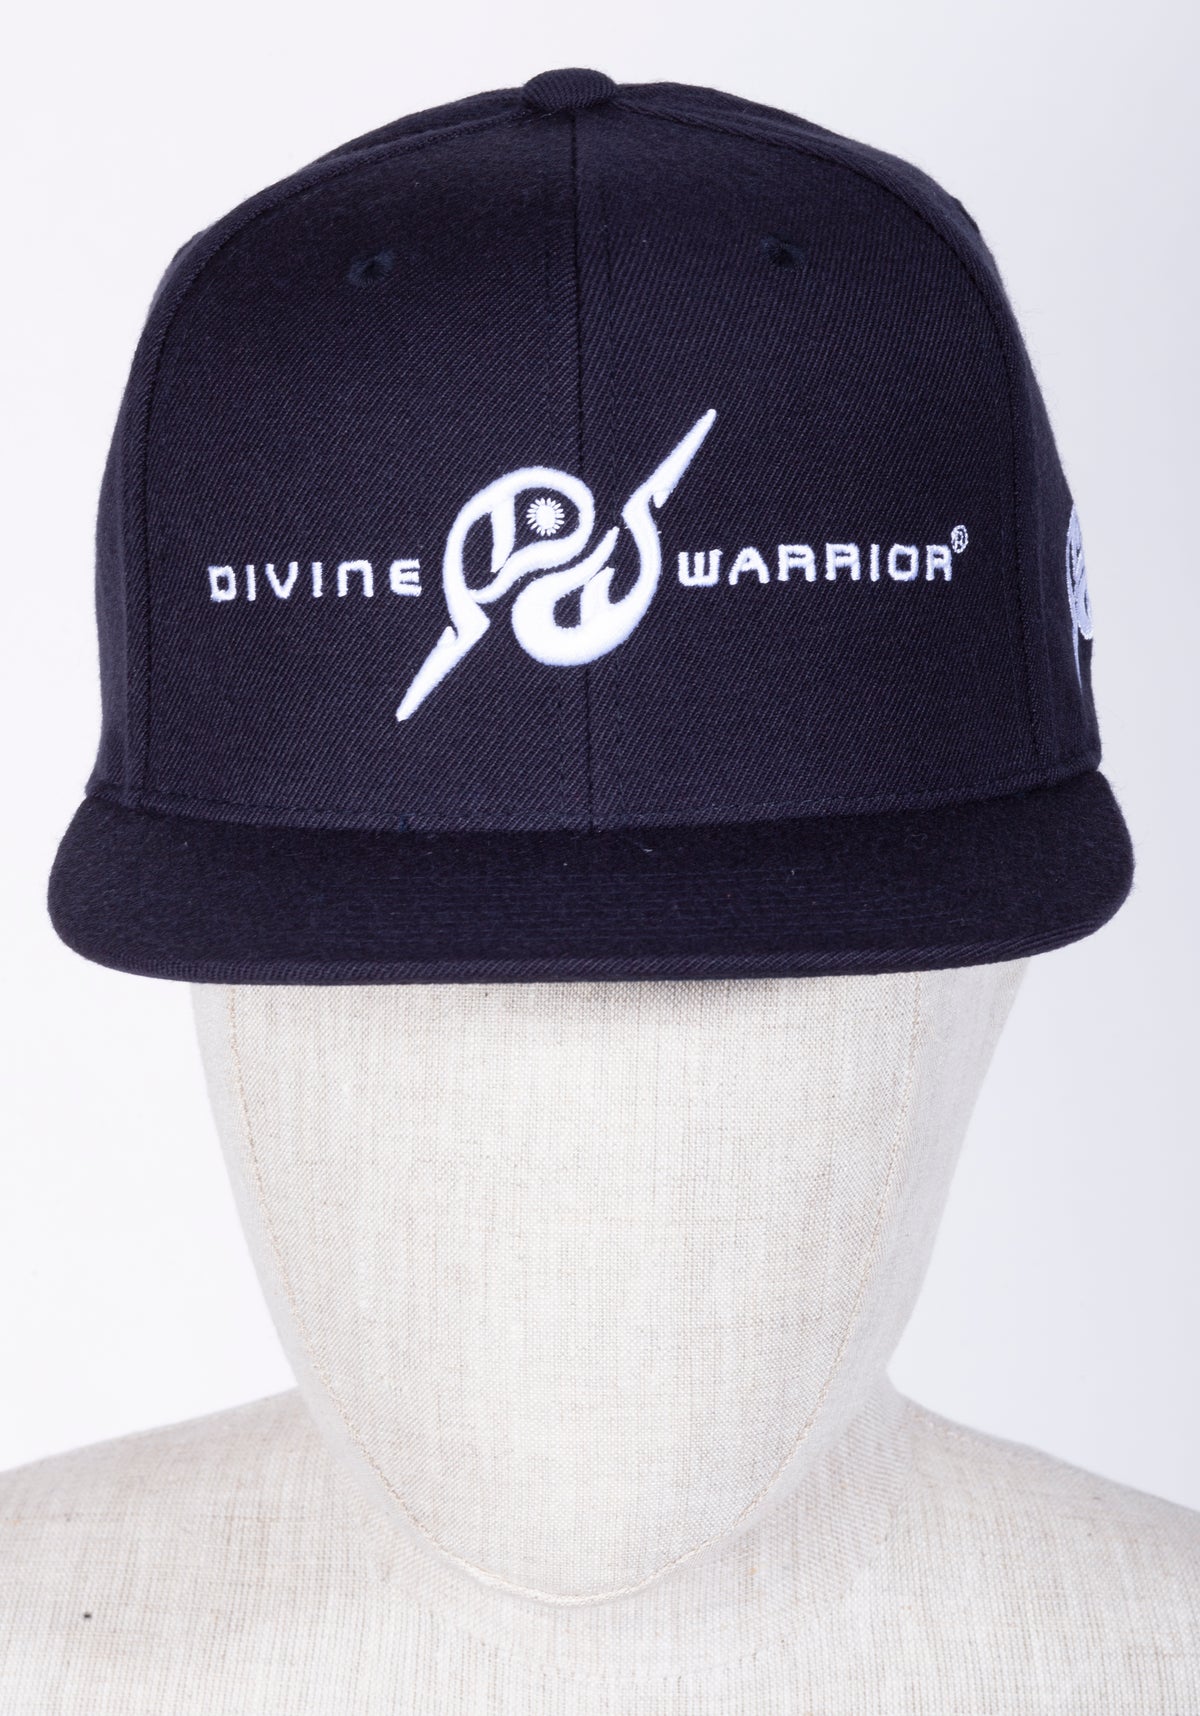 MIRARI® // Divine Warrior® Collection, Navy White Hat